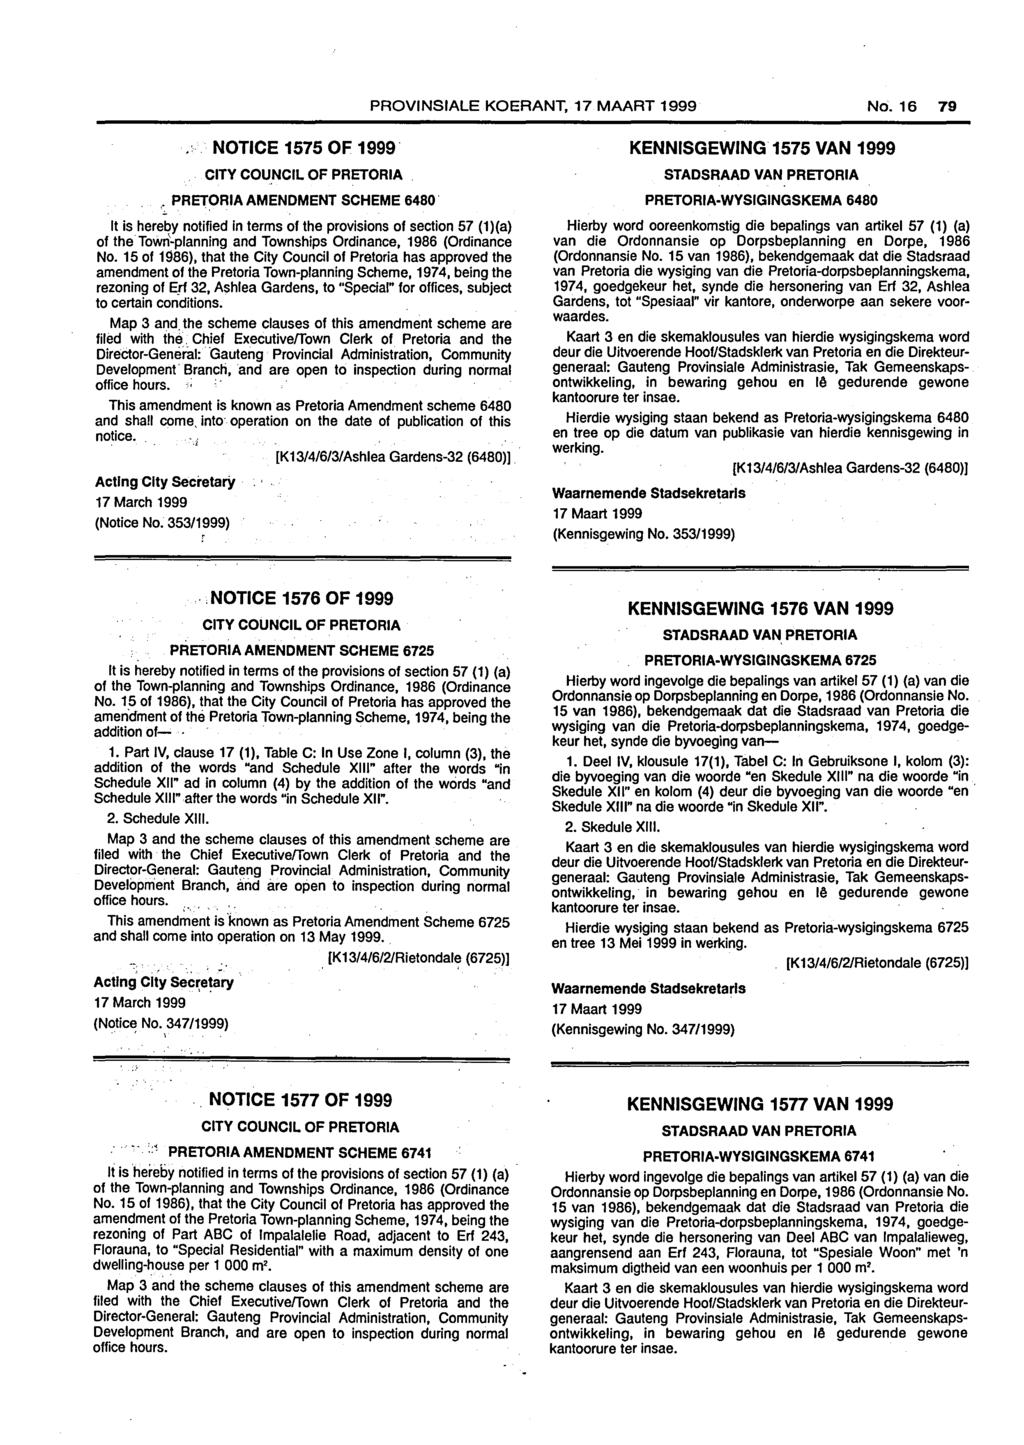 PROVINSIALE KOERANT, 17 MAART 1999 No. 16 79. NOTICE 1575 OF 1999 CITY COUNCIL OF PRETORIA. PRETORIA AMENDMENT SCHEME 6480.